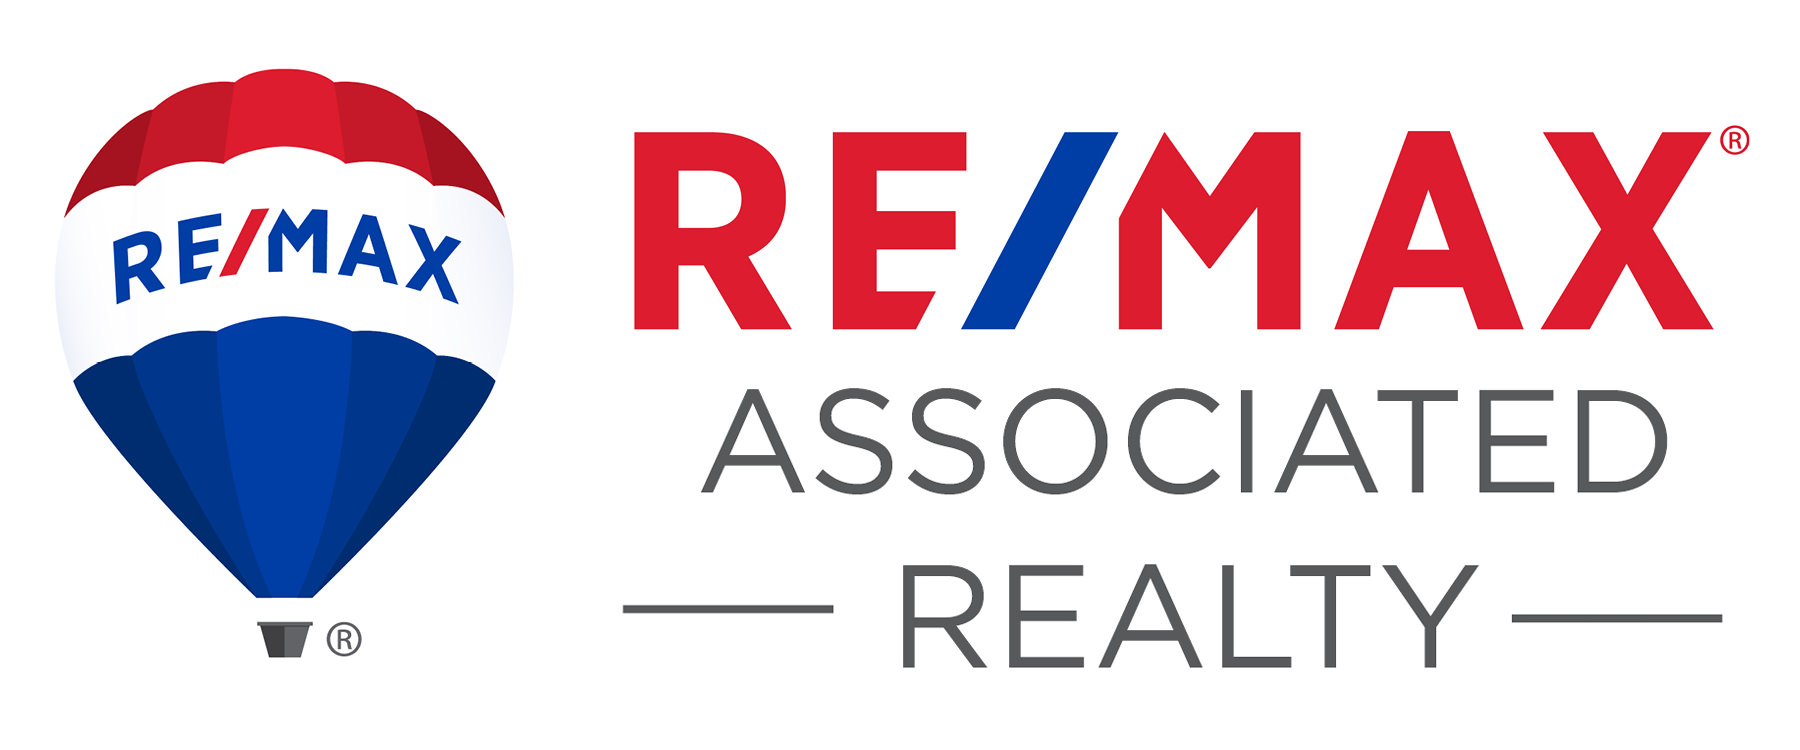 Wendy Wilson, Broker-Owner of Re/max Associated Realty